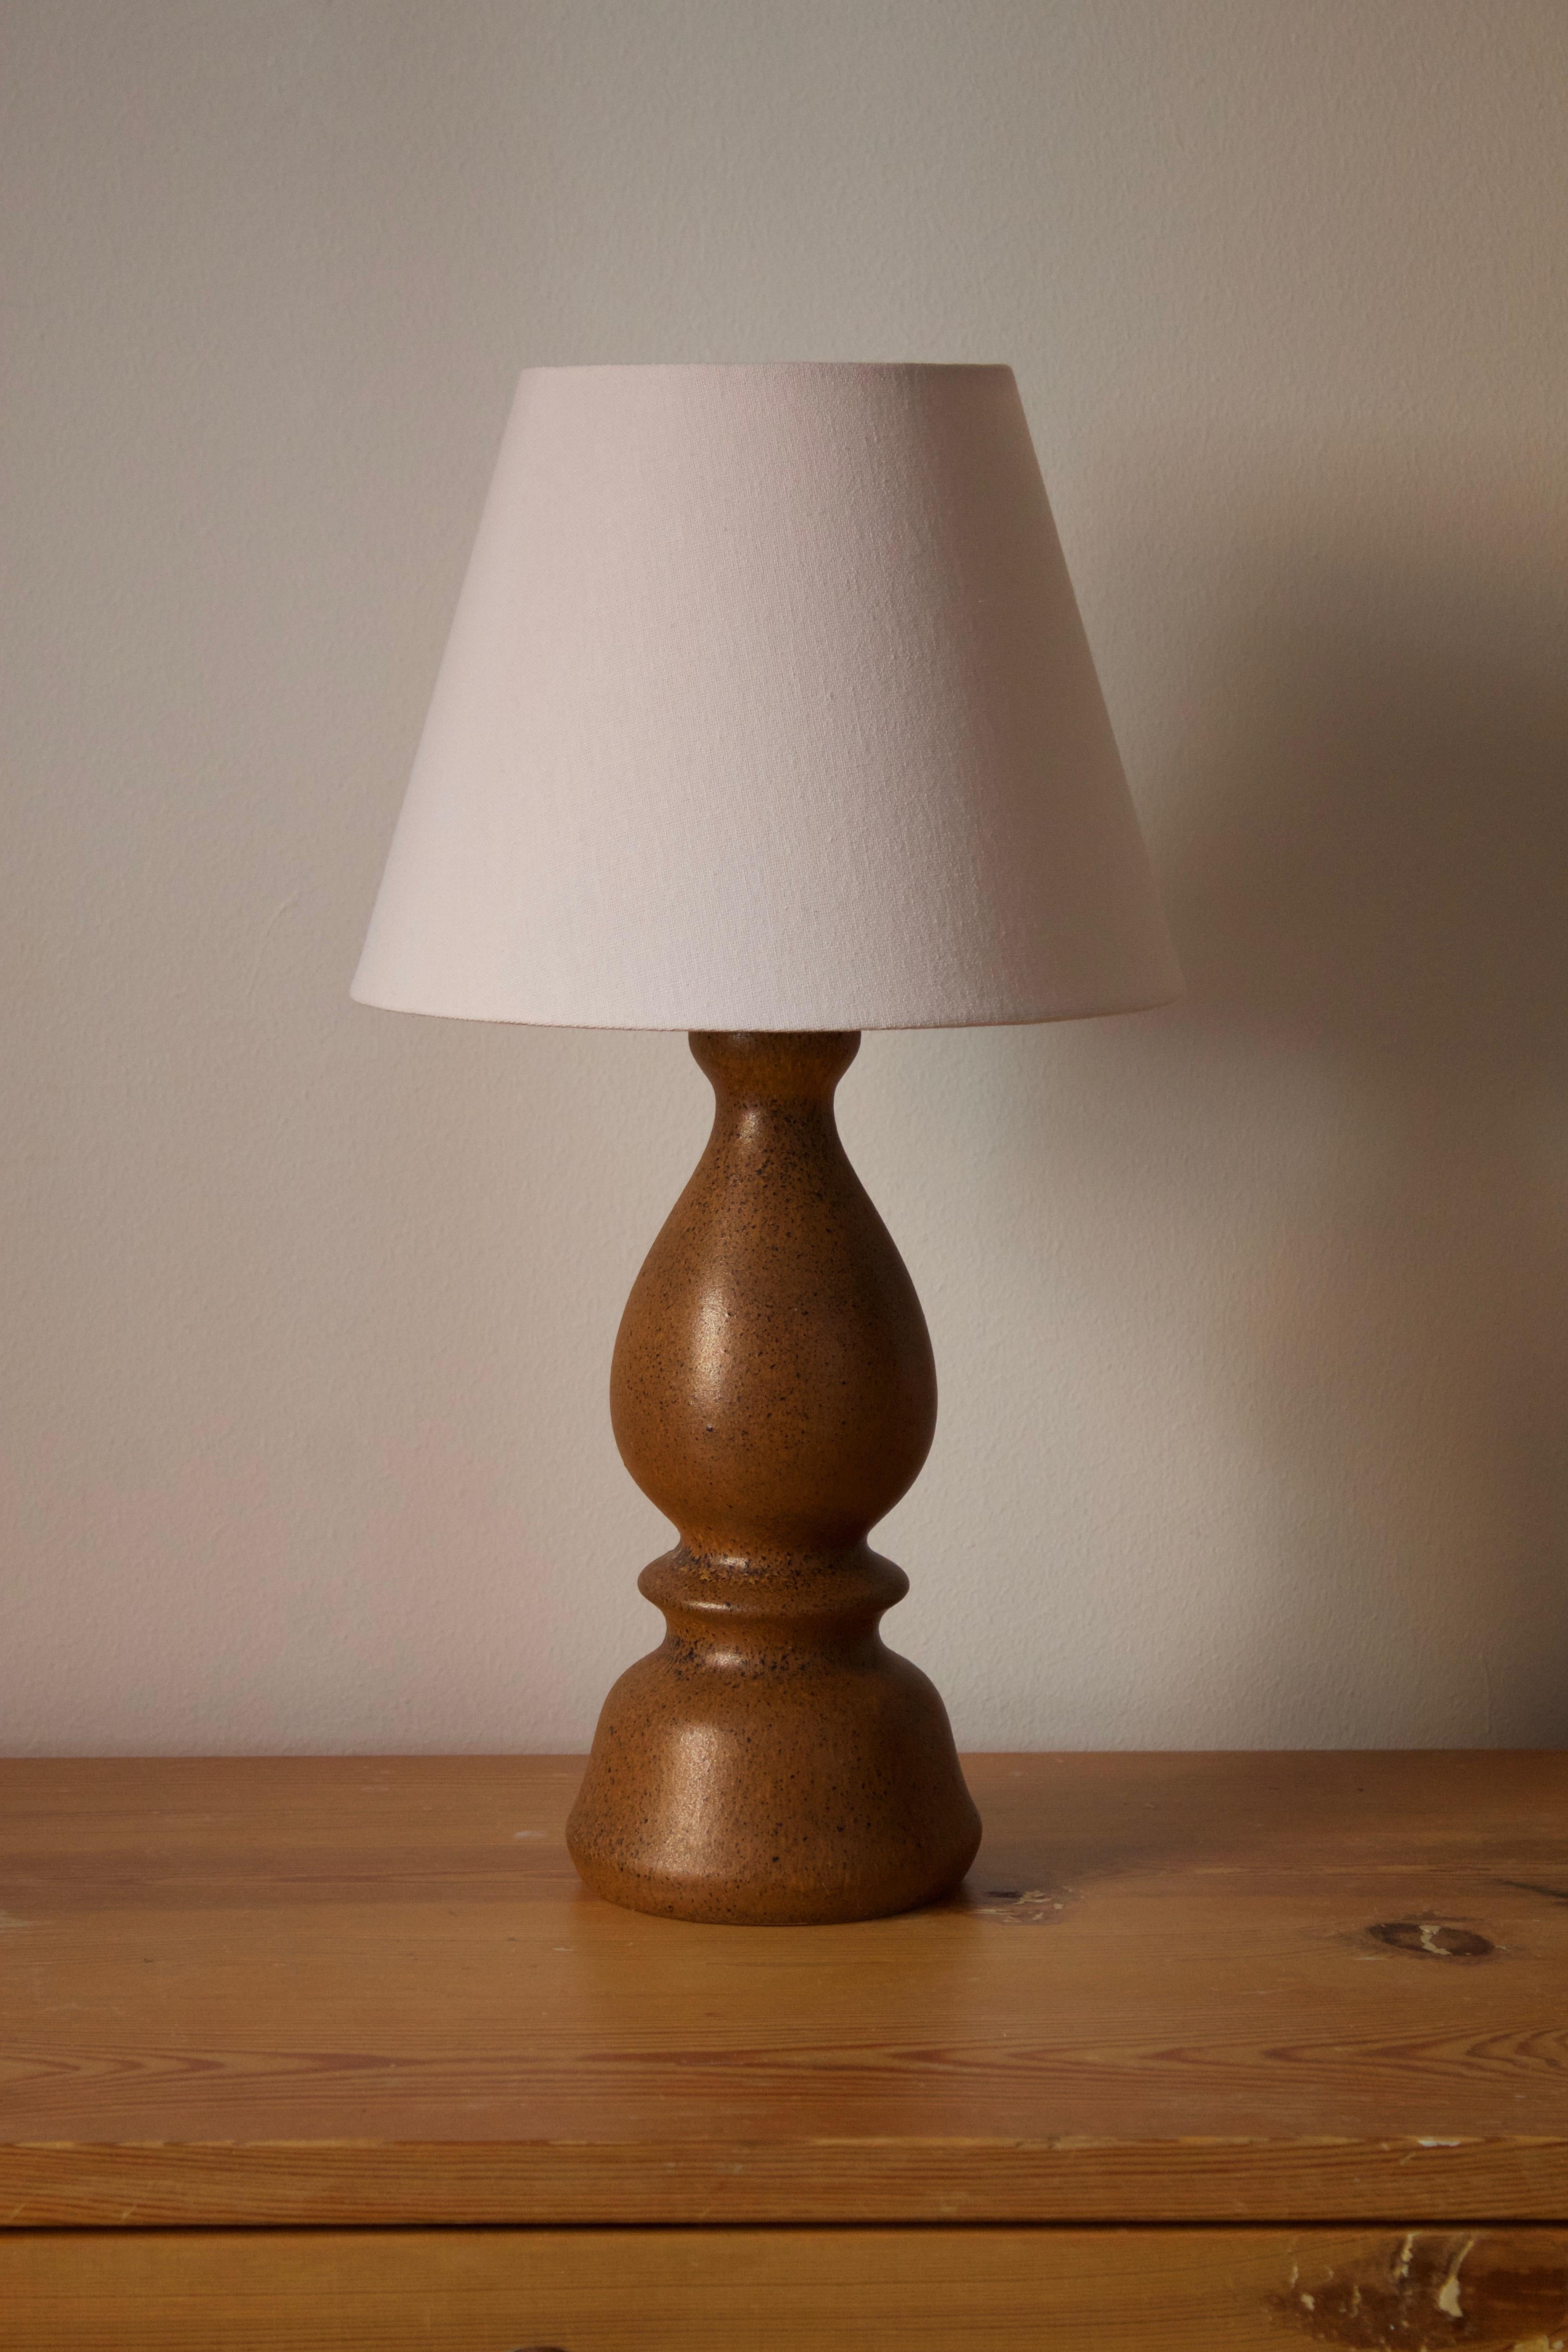 Une lampe de table en grès, exécutée par Bruno Karlsson dans une forme abstraite et une glaçure brune très artistique. Dans son studio, appelé 